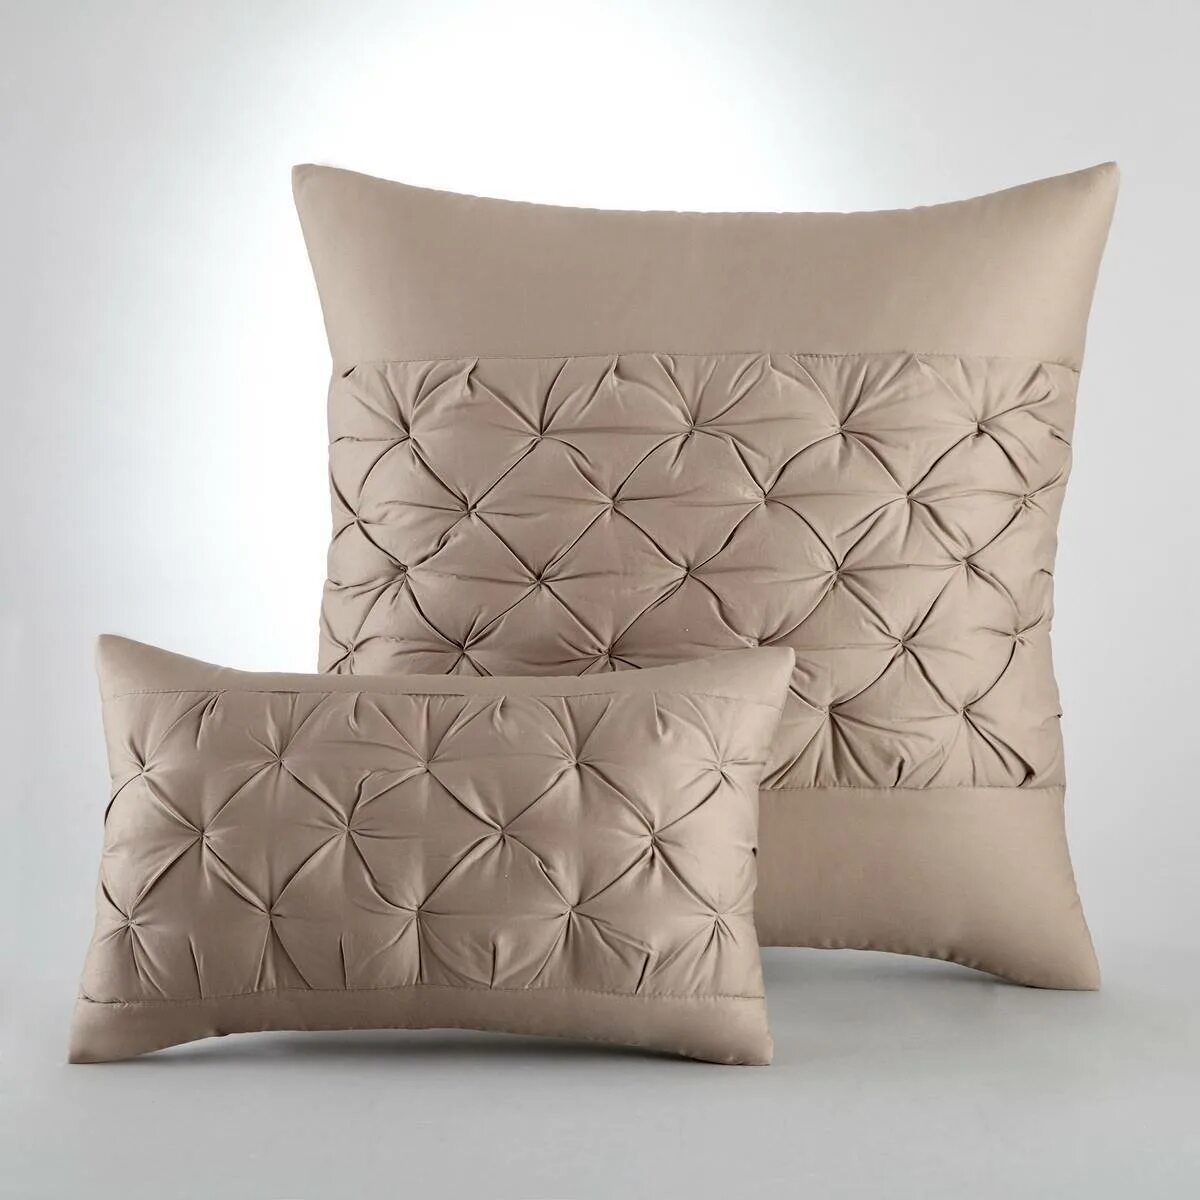 Наволочка на прямоугольную подушку. Piero REDAELLI наволочка 50х70. Красивые подушки. Дизайнерские подушки. Наволочки на диванные подушки.